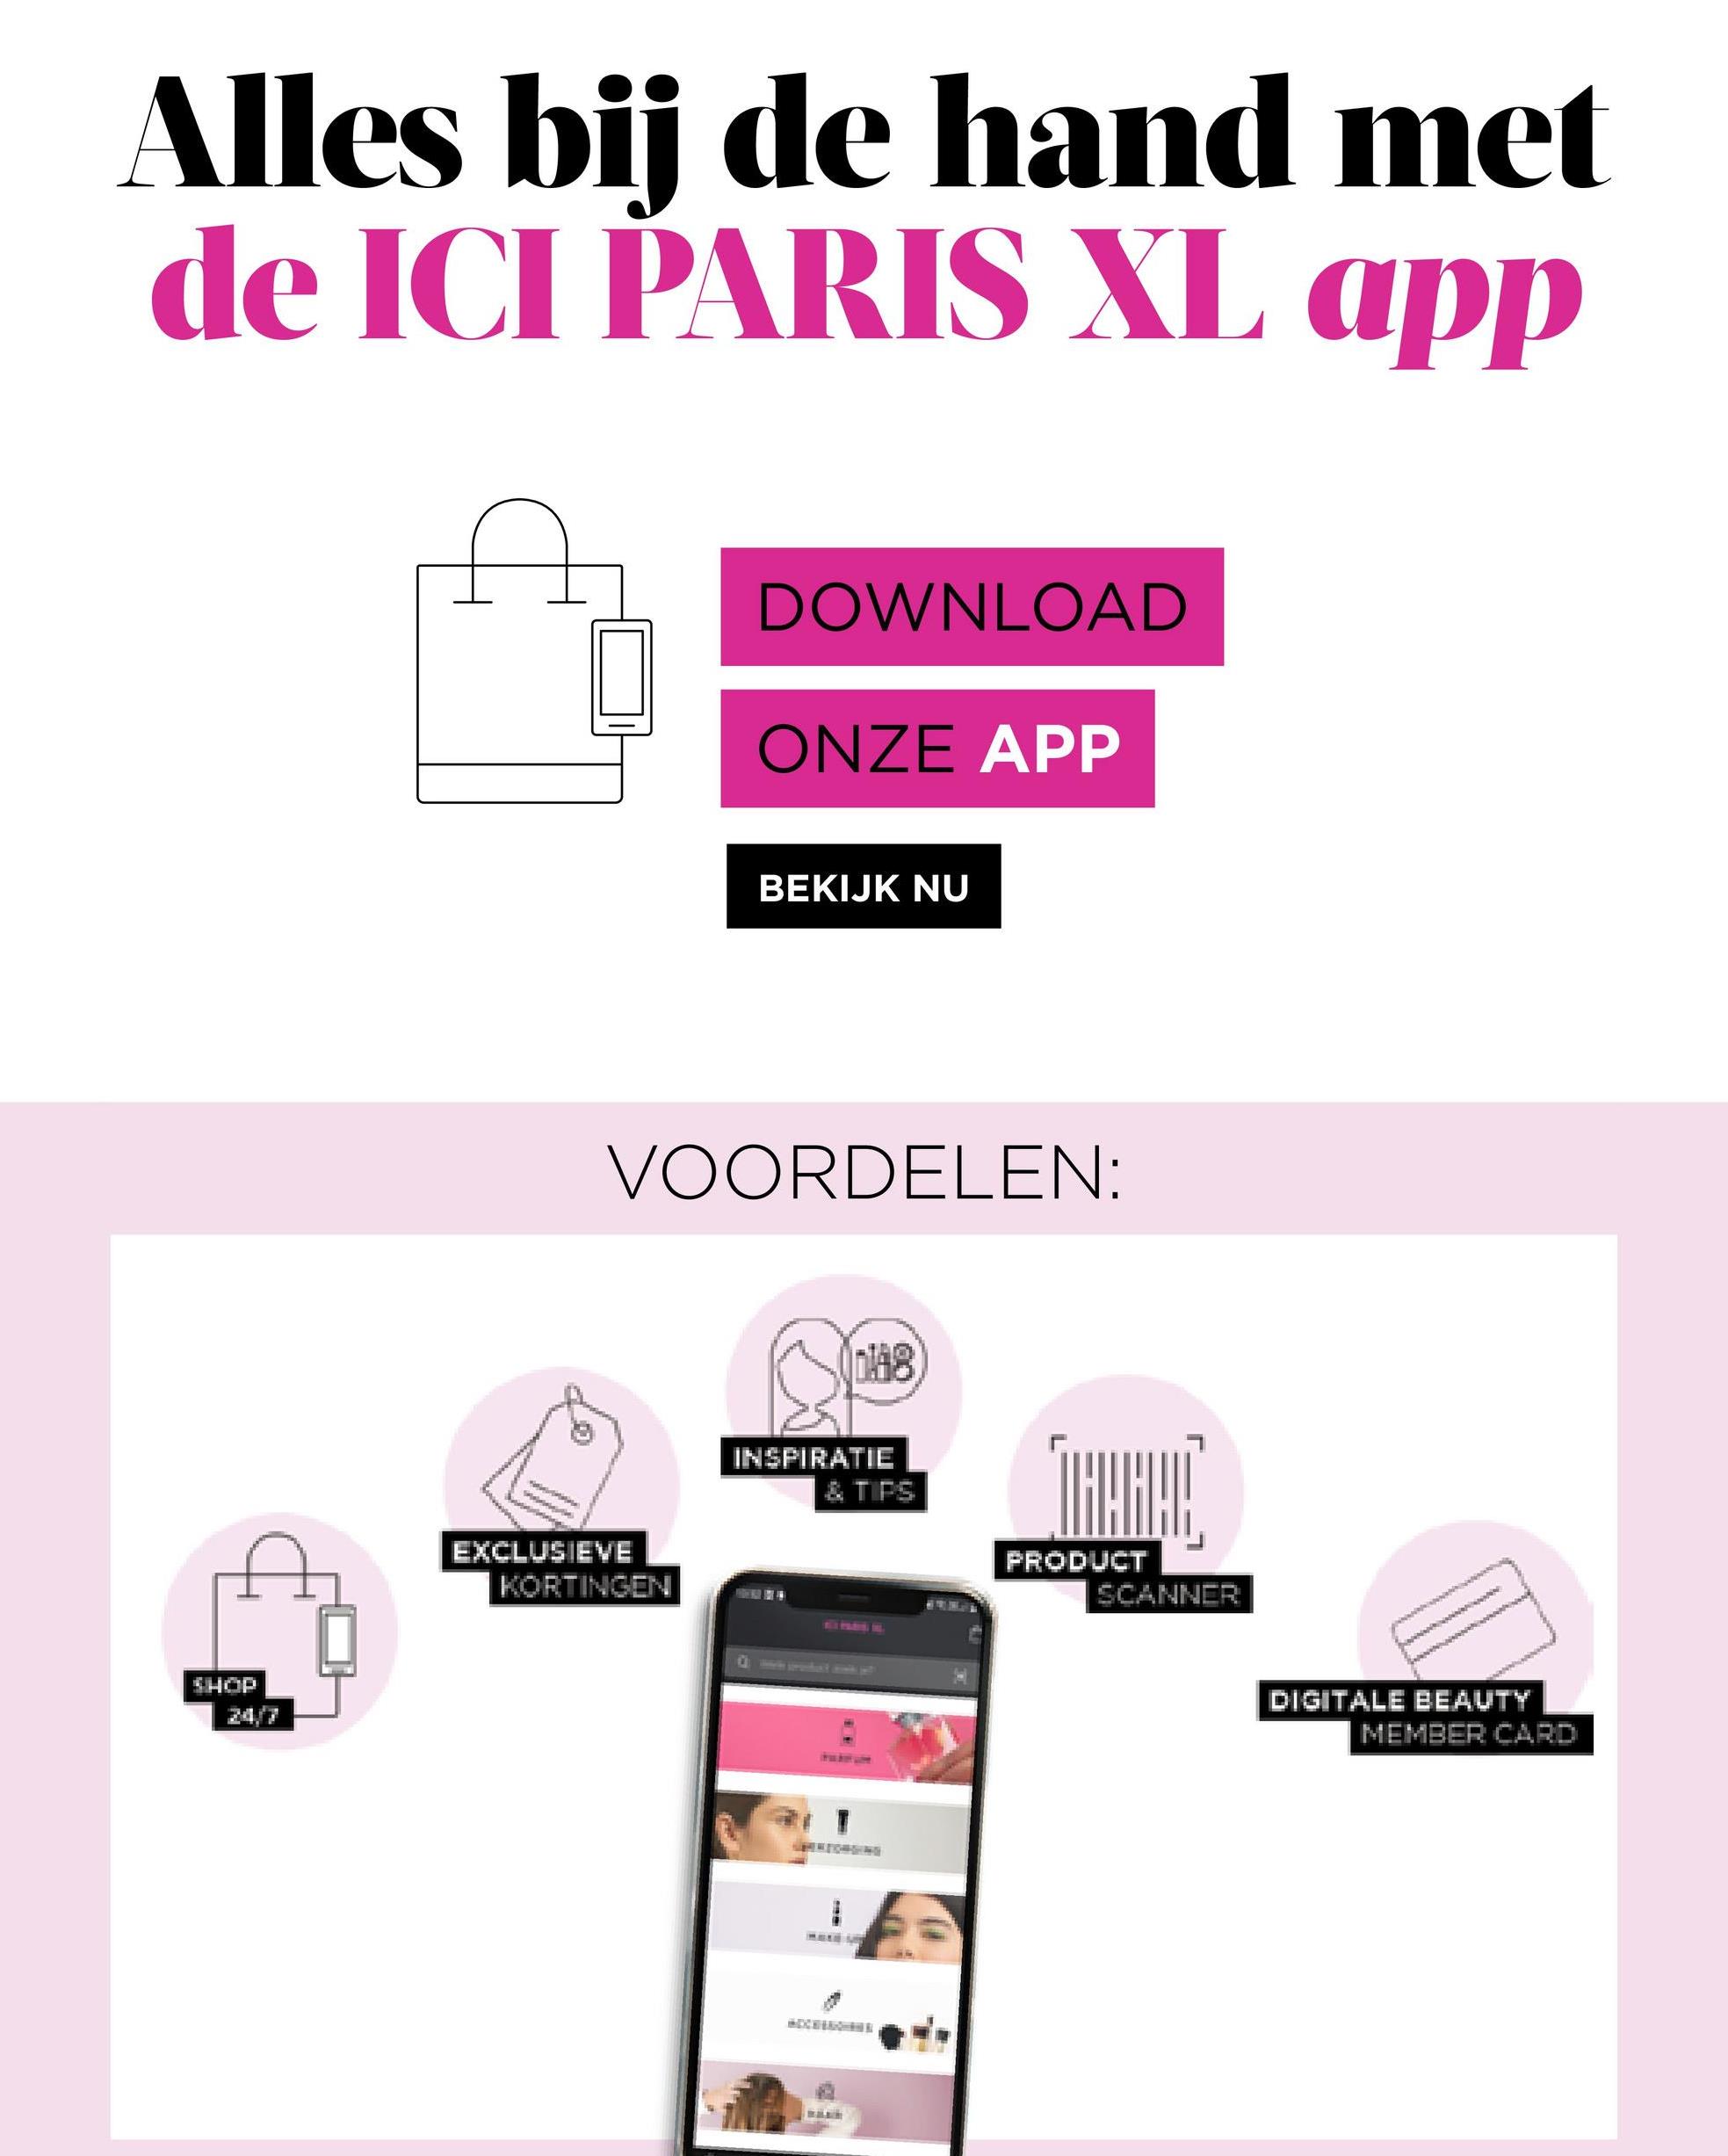 Alles bij de hand met
de ICI PARIS XL app
DOWNLOAD
ONZE APP
BEKIJK NU
VOORDELEN:
148
INSPIRATIE
& TIPS
*****
EXCLUSIEVE
SHOP
KORTINGEN
TRARAC
PRODUCT
SCANNER
DIGITALE BEAUTY
MEMBER CARD